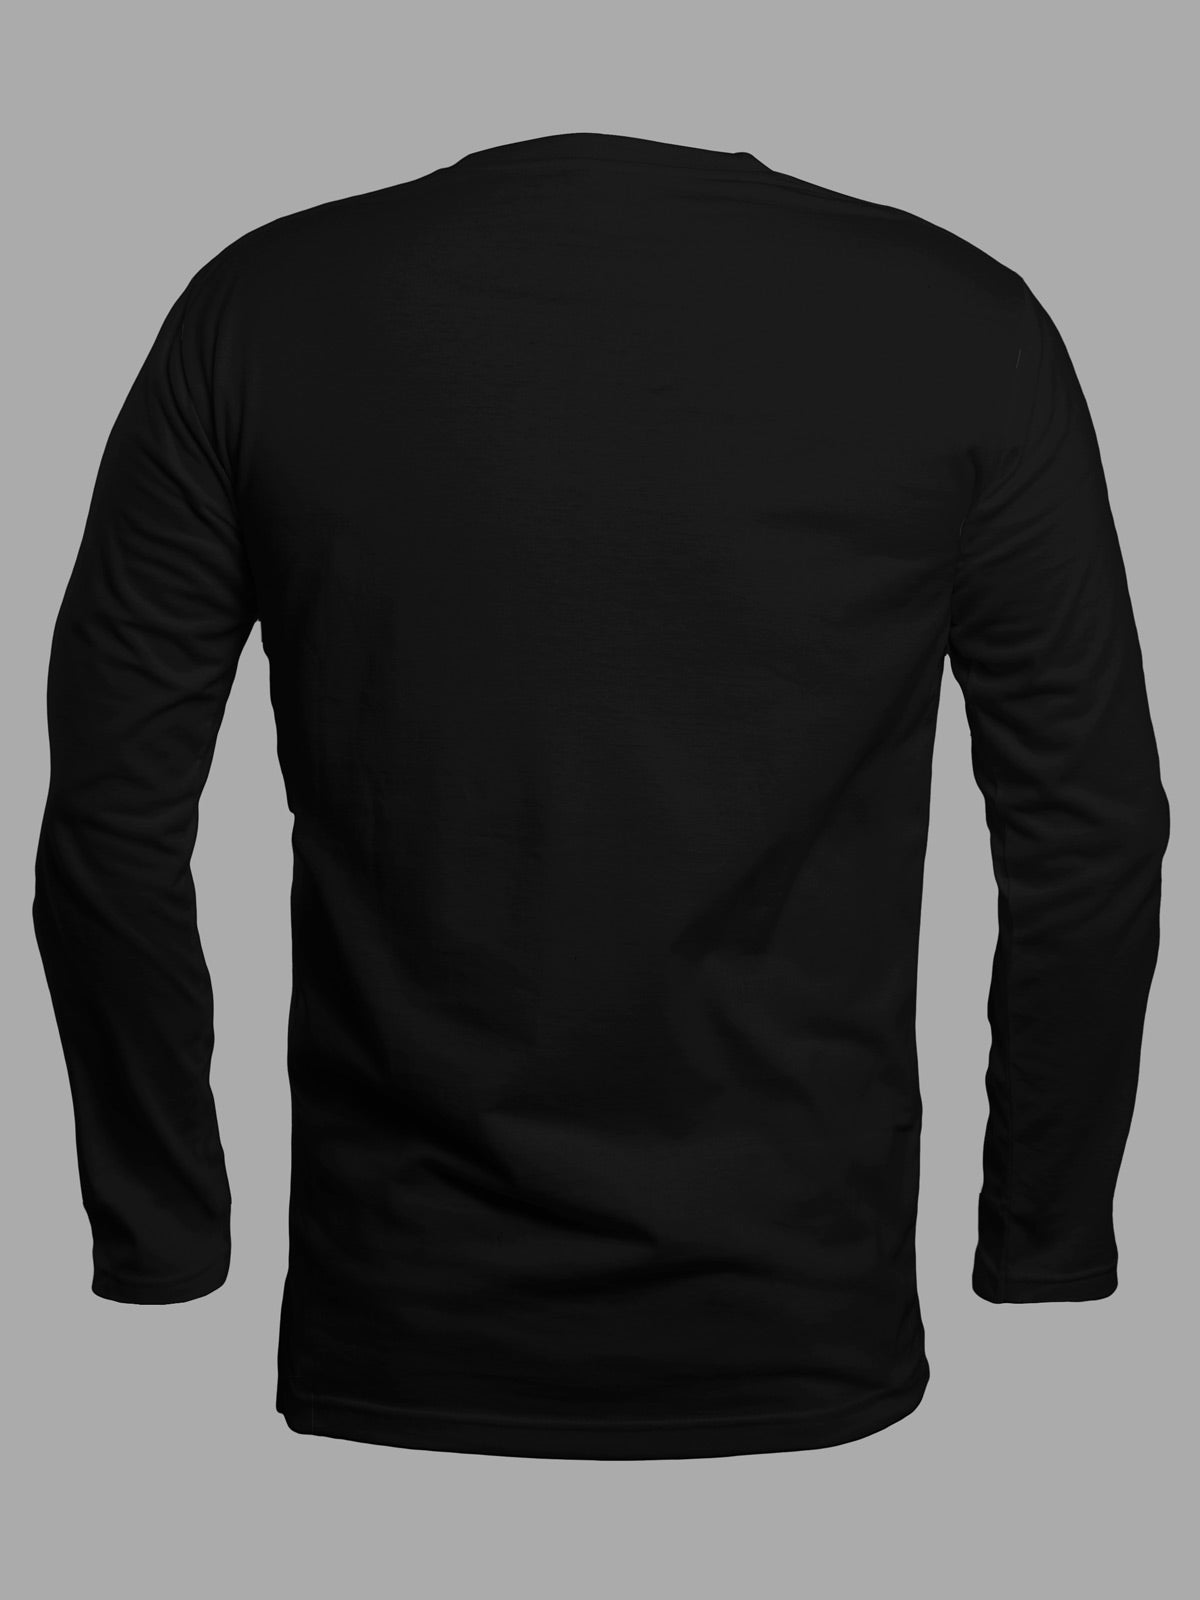 Black-full-sleeves-t-shirt